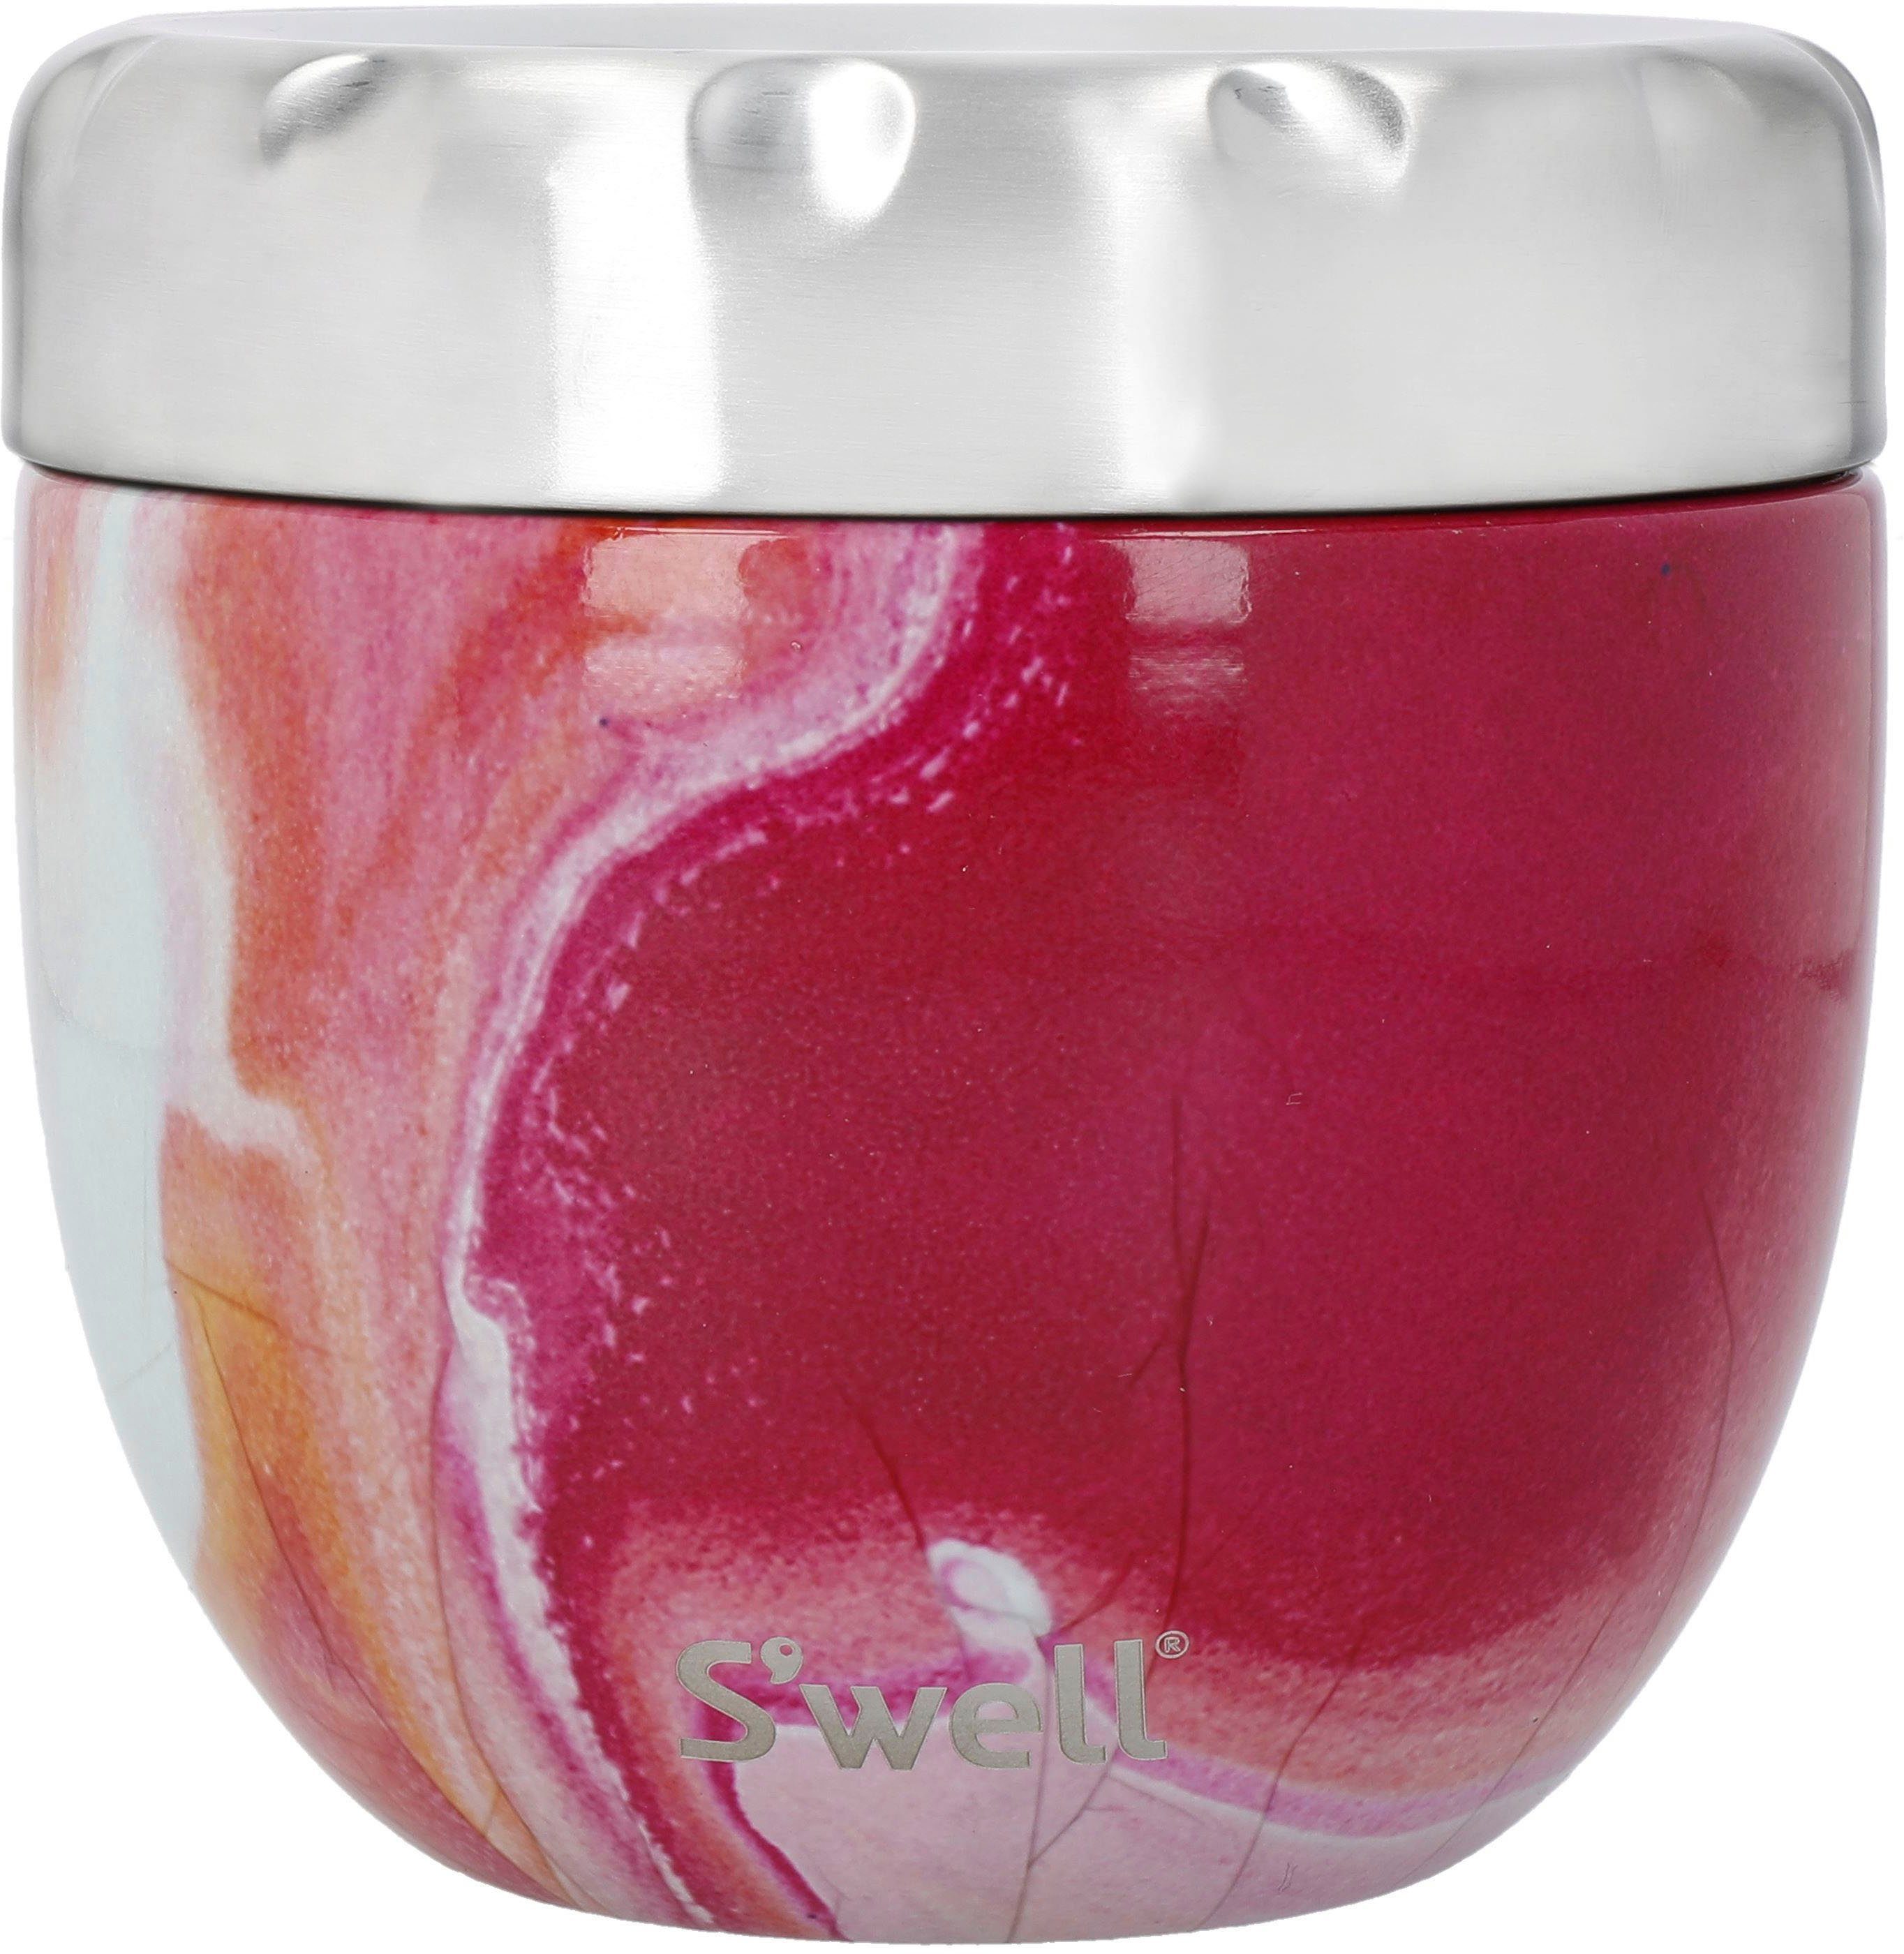 S'well Thermoschüssel S’well Pink Topaz Eats 2-in-1 Food Bowl, Edelstahl, (2-tlg), Therma-S'well®-Technologie mit dreischichtiger Außenschale Rosenachat | Thermoschüsseln